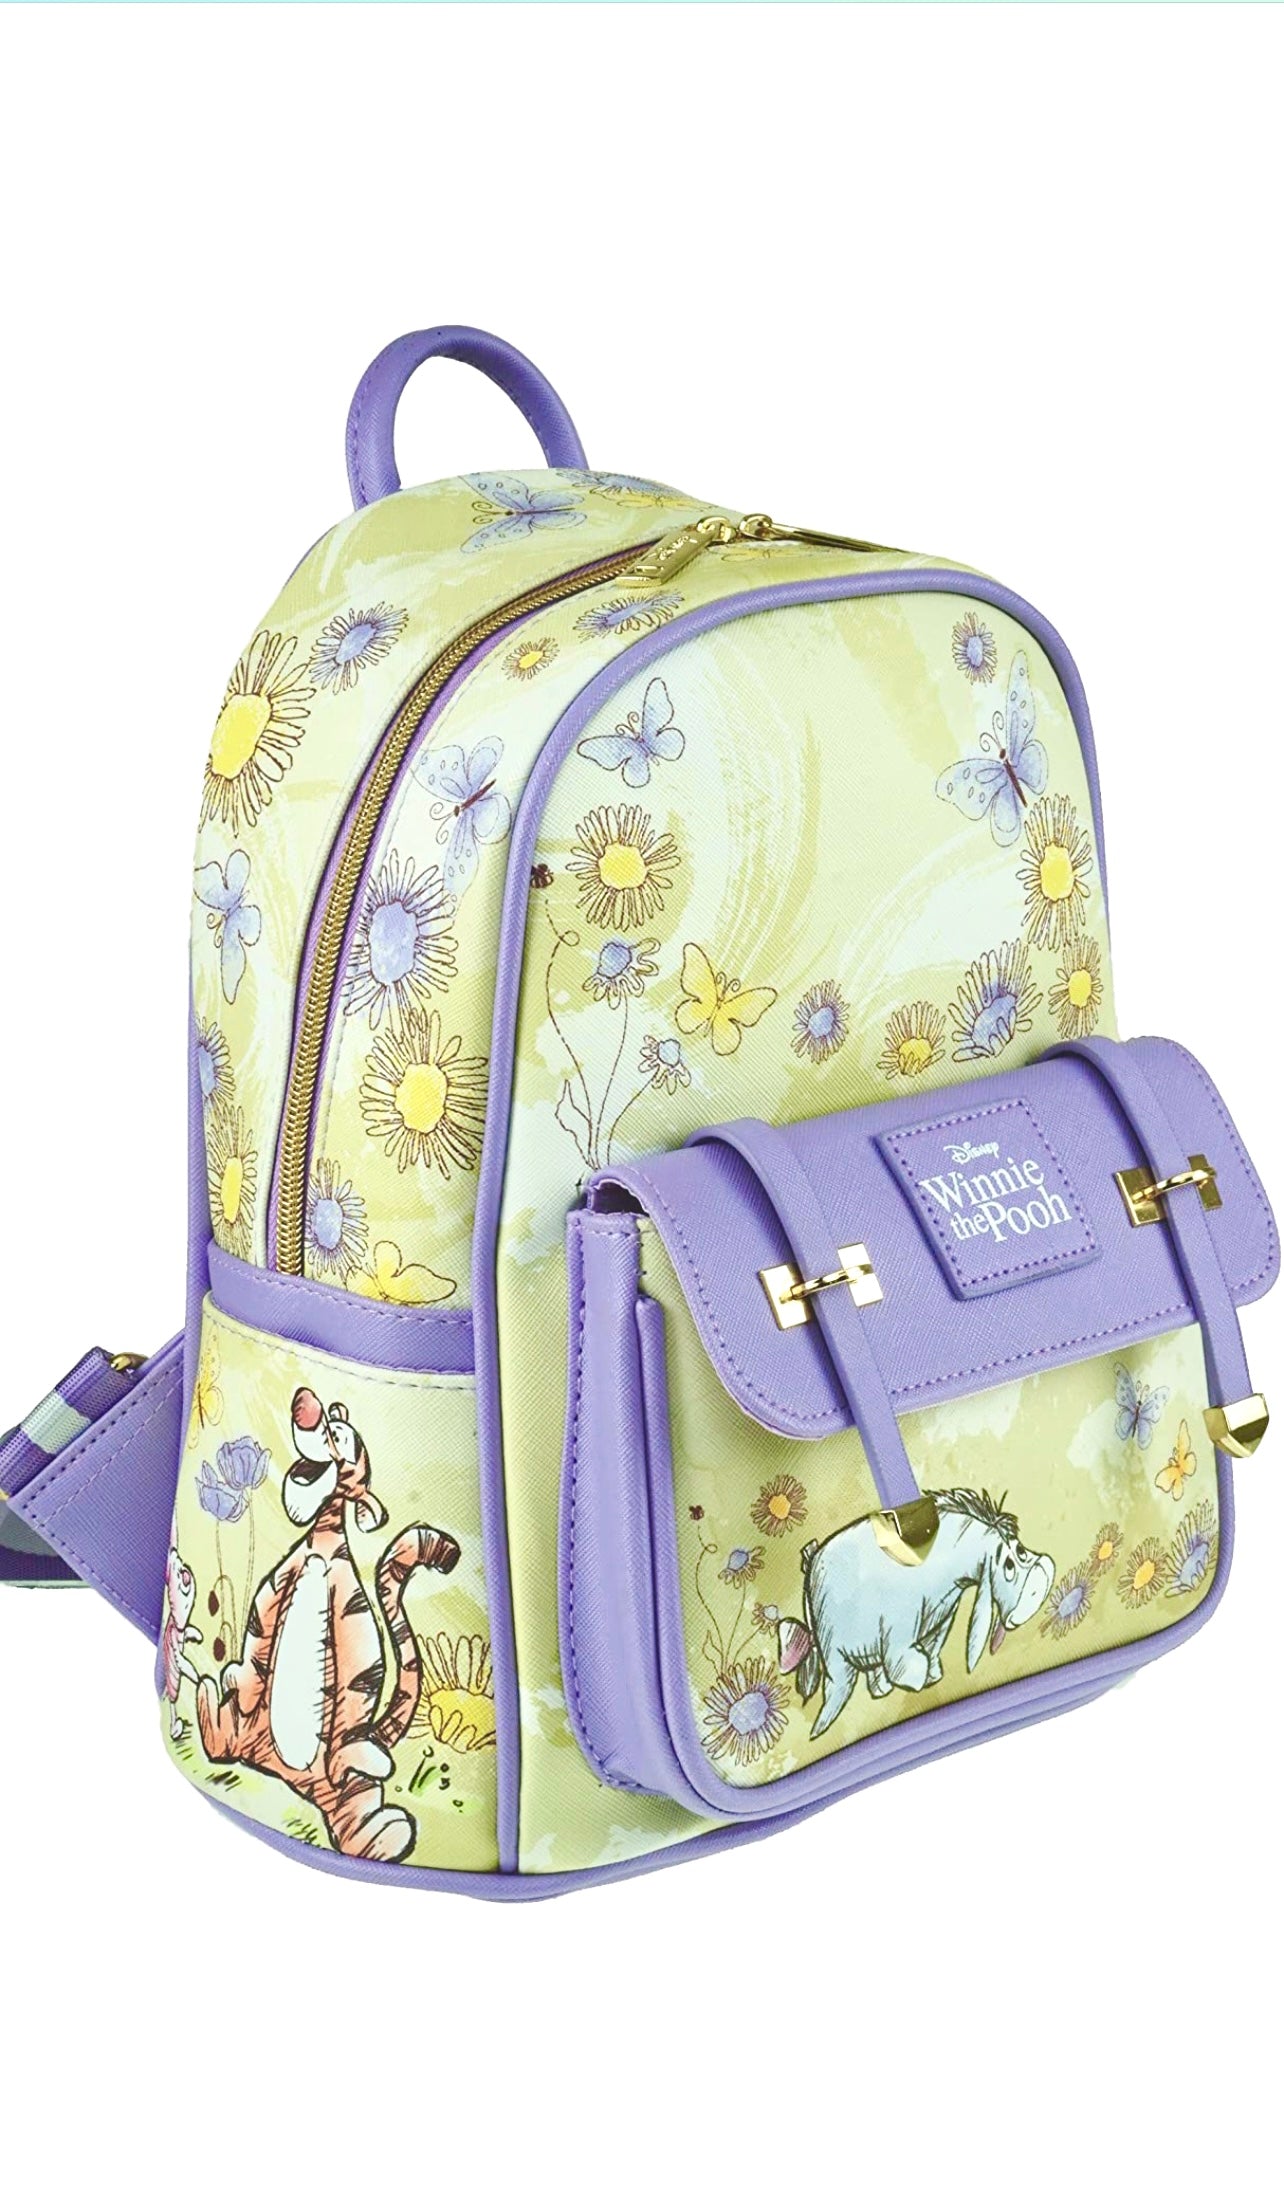 Winnie the Pooh- Eeyore Vegan Leather Backpack